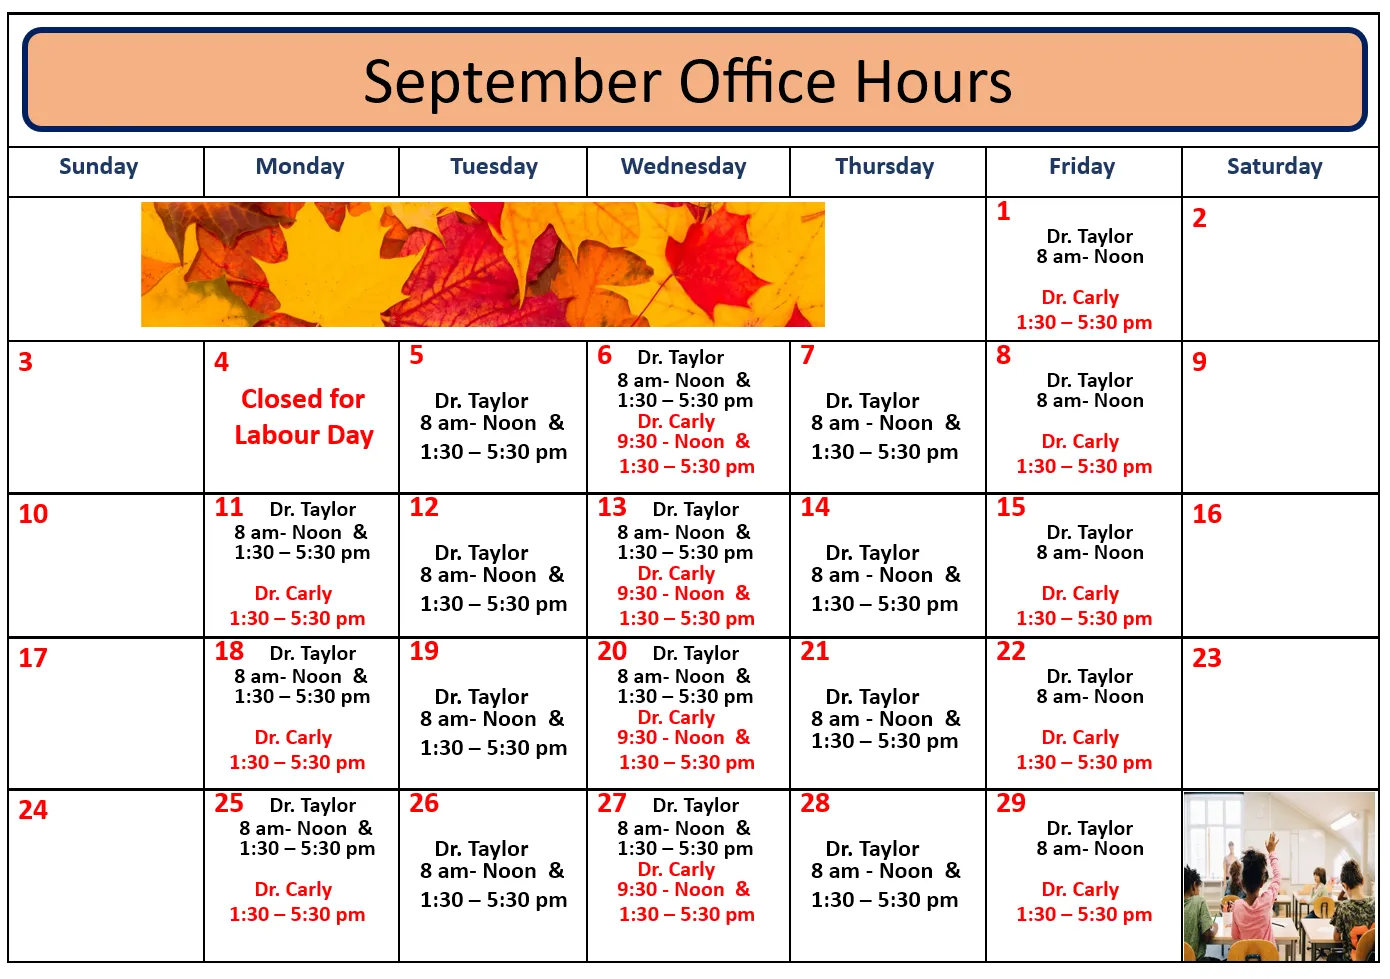 September hours